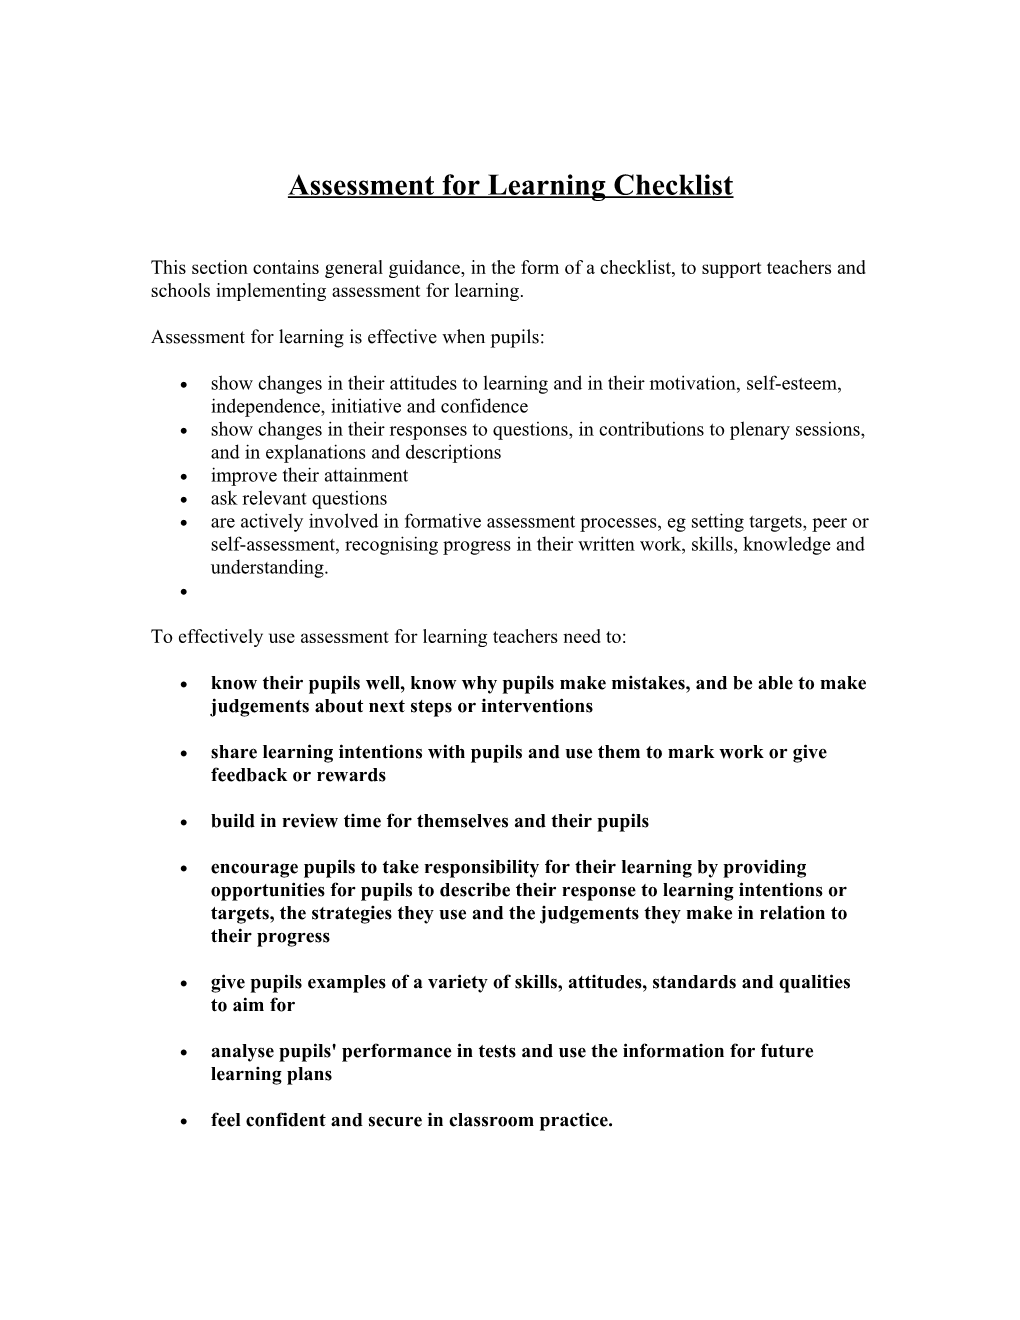 Assessment for Learning Checklist